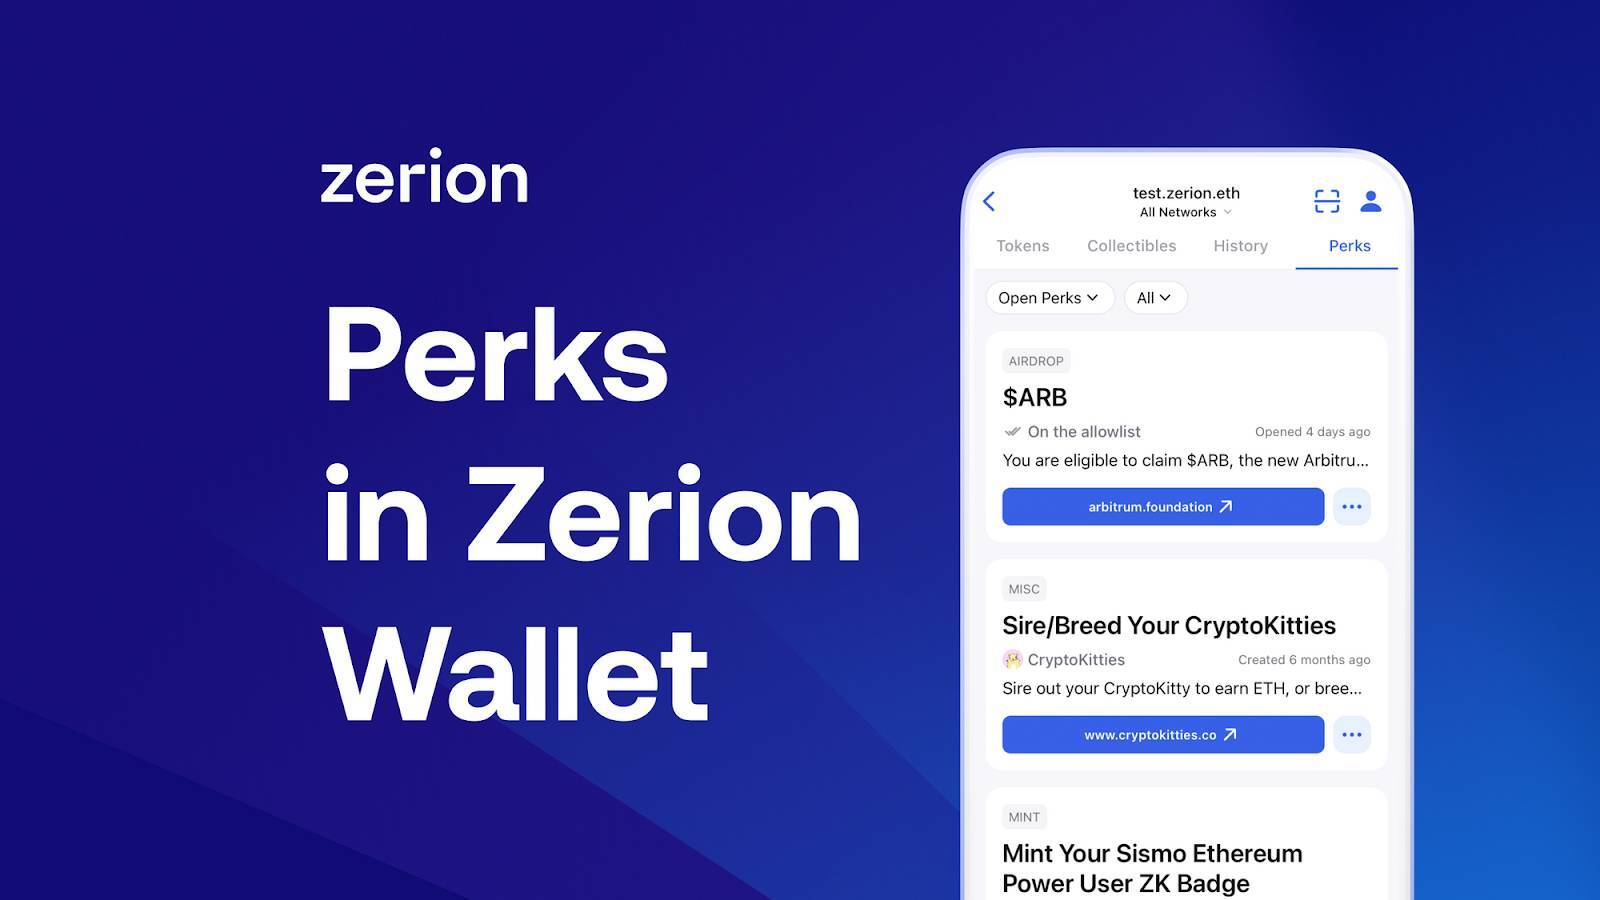 Zerion Wallet Là Gì Hướng Dẫn Sử Dụng Zerion Wallet Dành Cho Người Mới